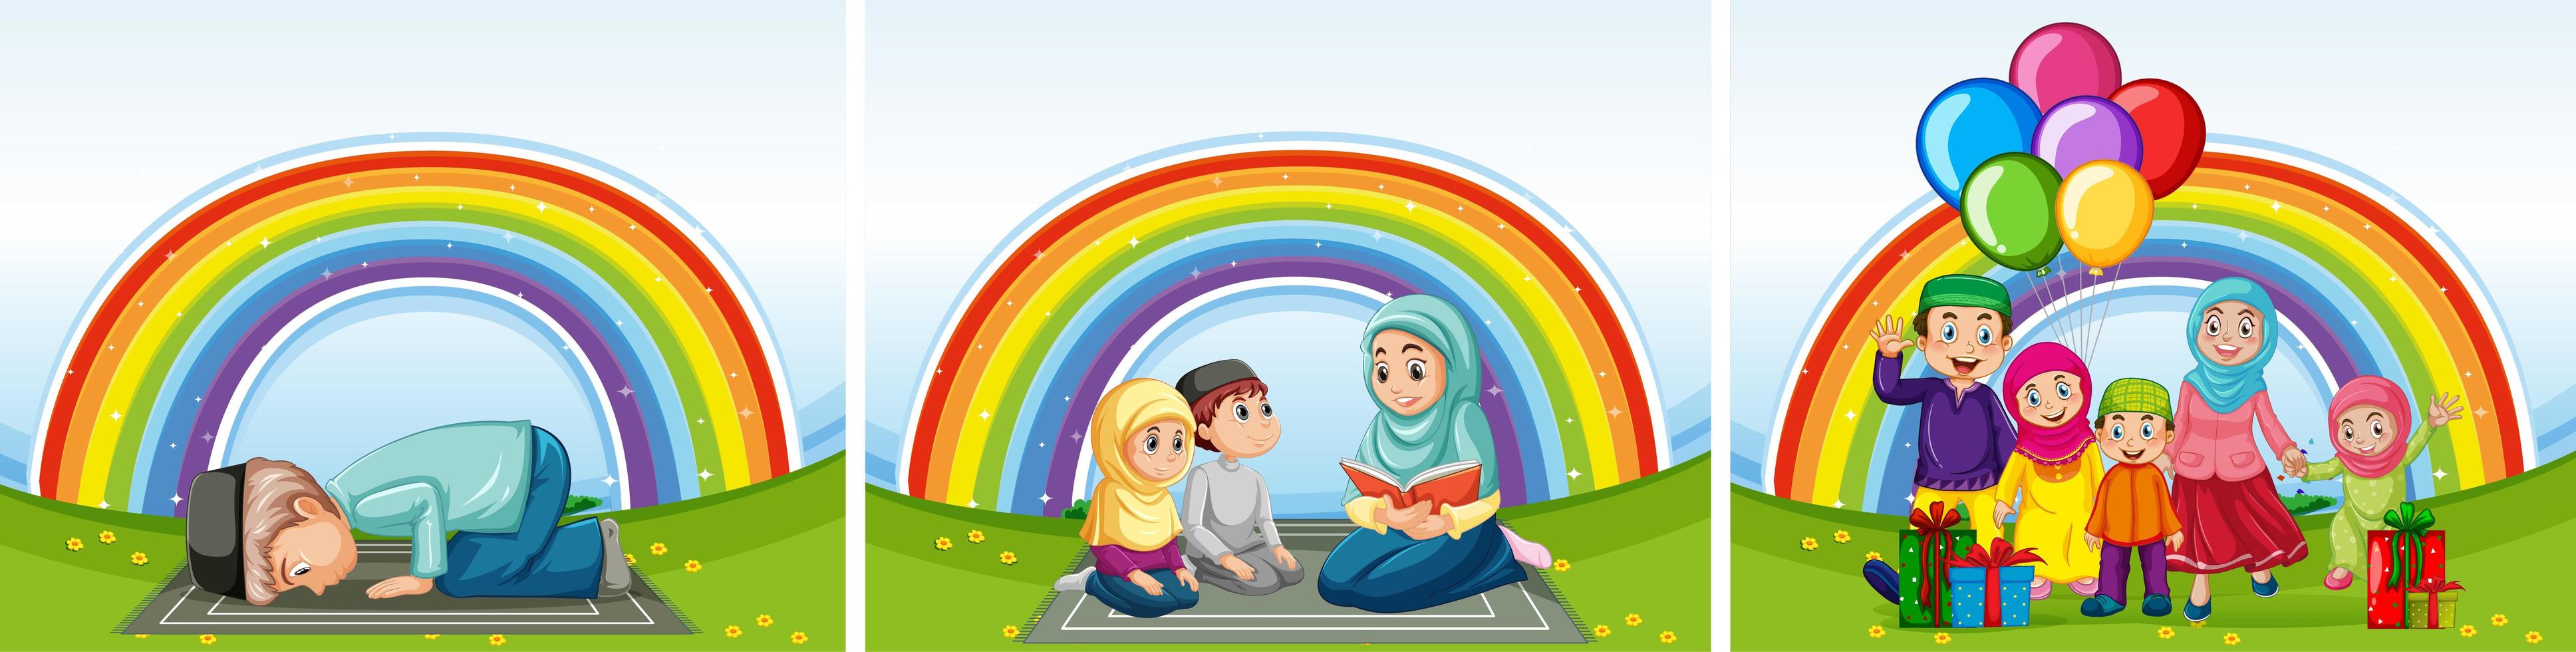 set di famiglie musulmane arabe e sfondo arcobaleno vettore